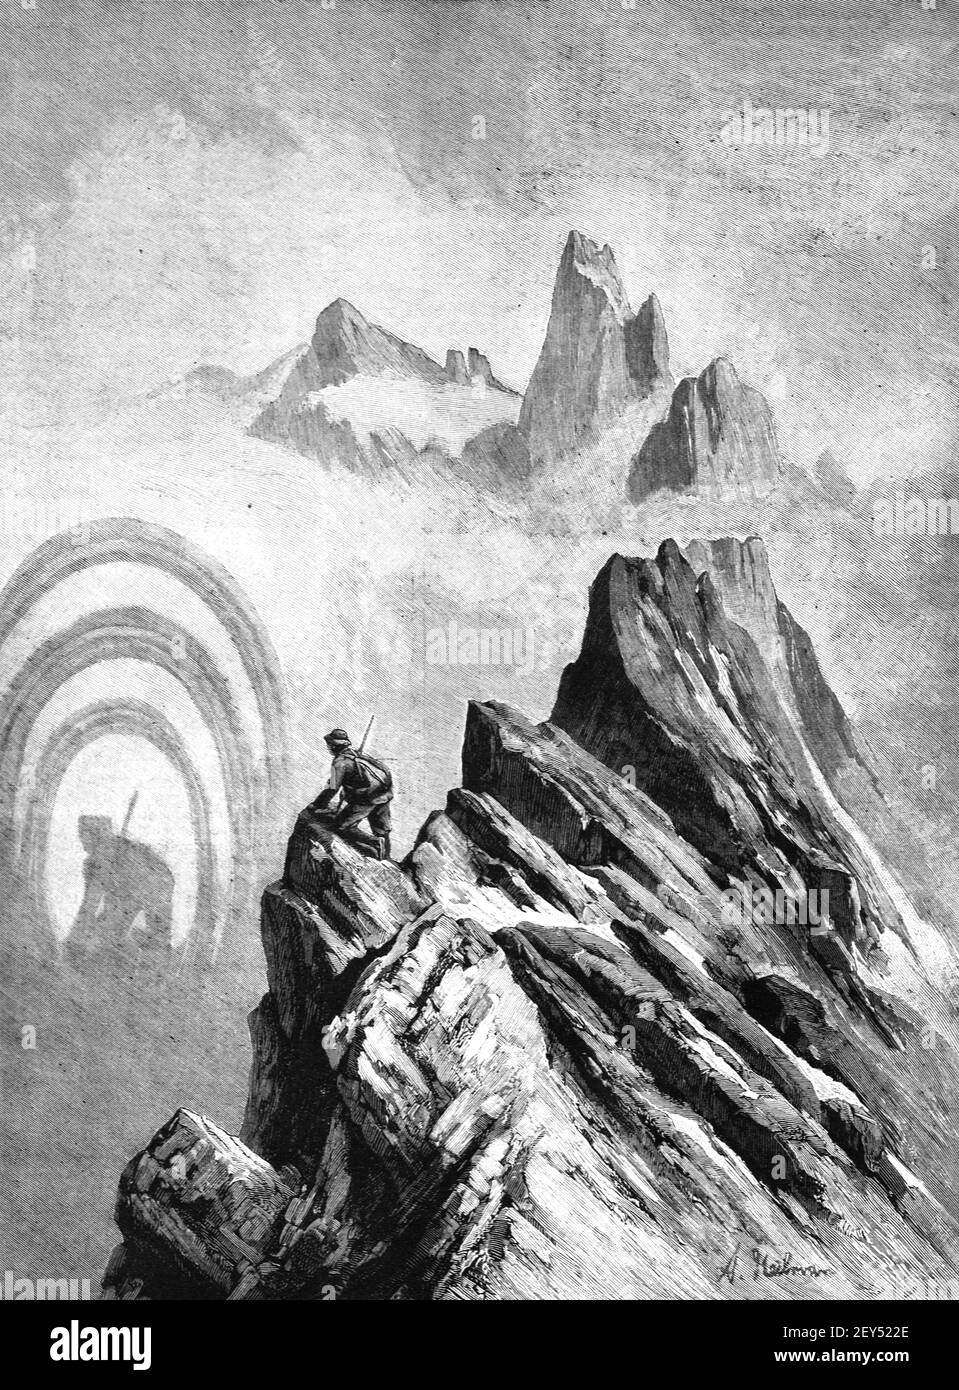 Broken Specter aka Broken Bow oder Mountain Spectre benannt nach Broken Peak, Harz Mountain, Deutschland 1896 Vintage Illustration oder Old Engraving Stockfoto